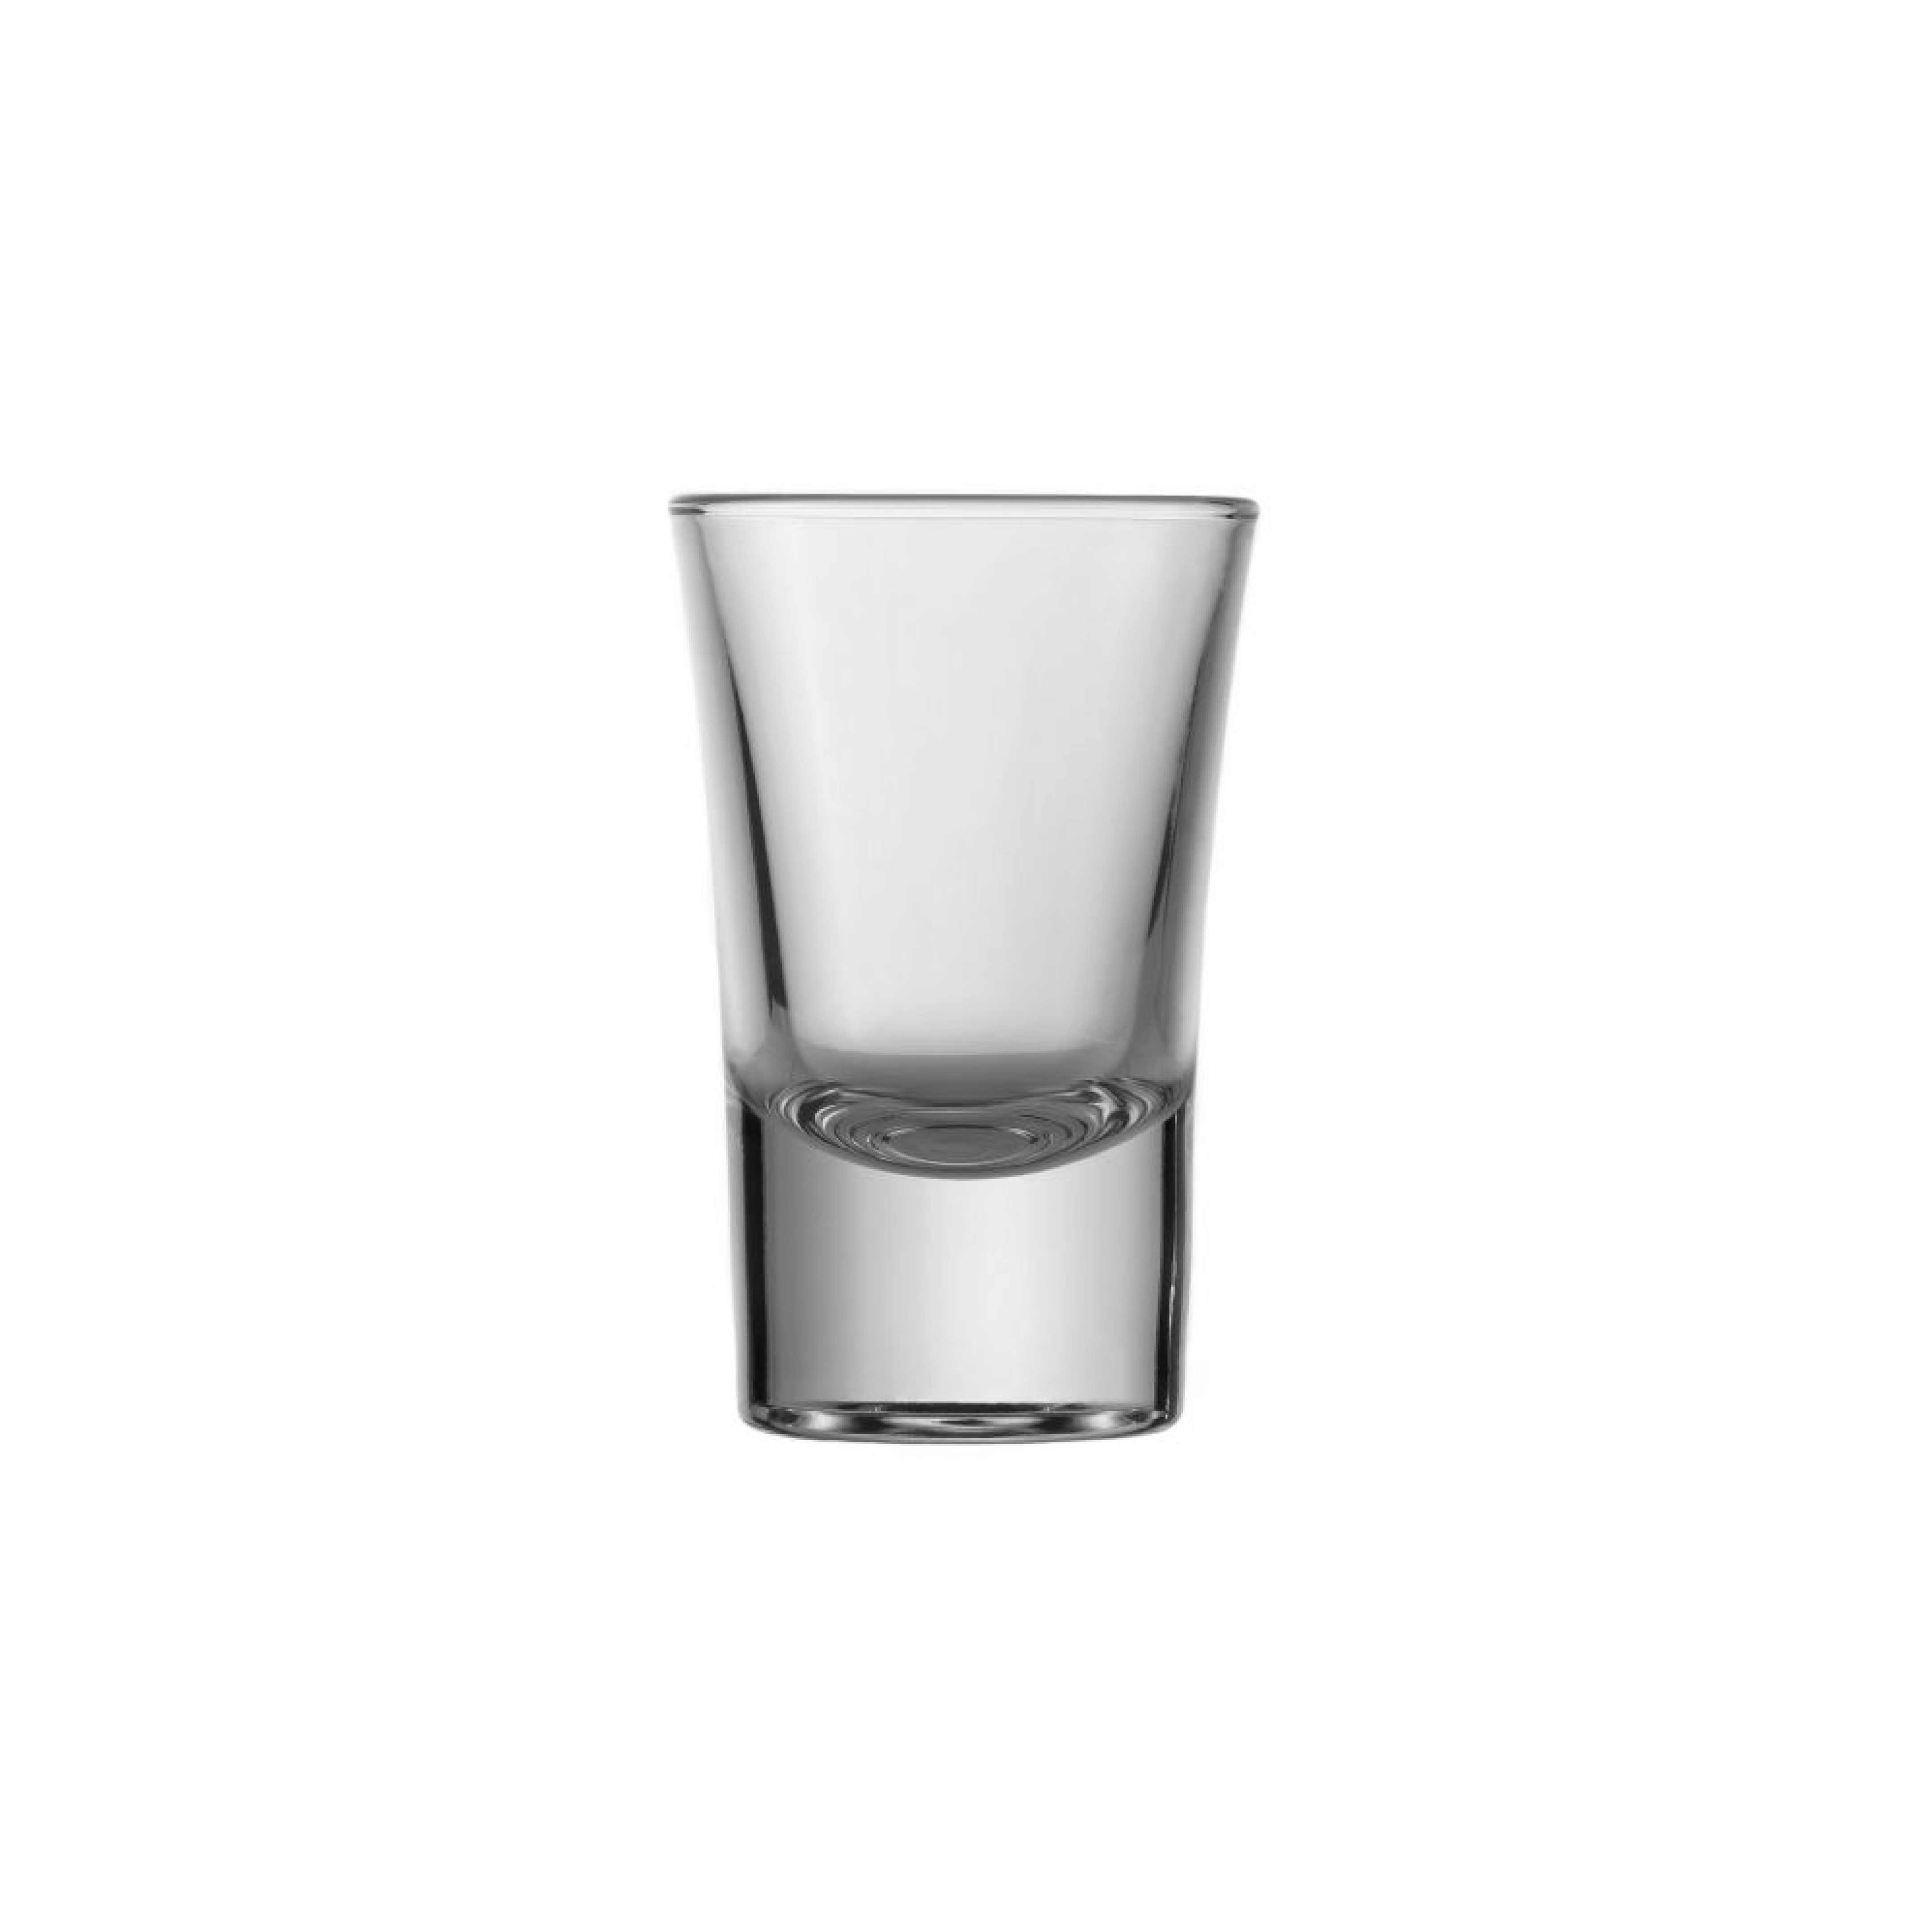 Gotë qelqi për likër (shots) Cheerio (96 copë), 35 ml